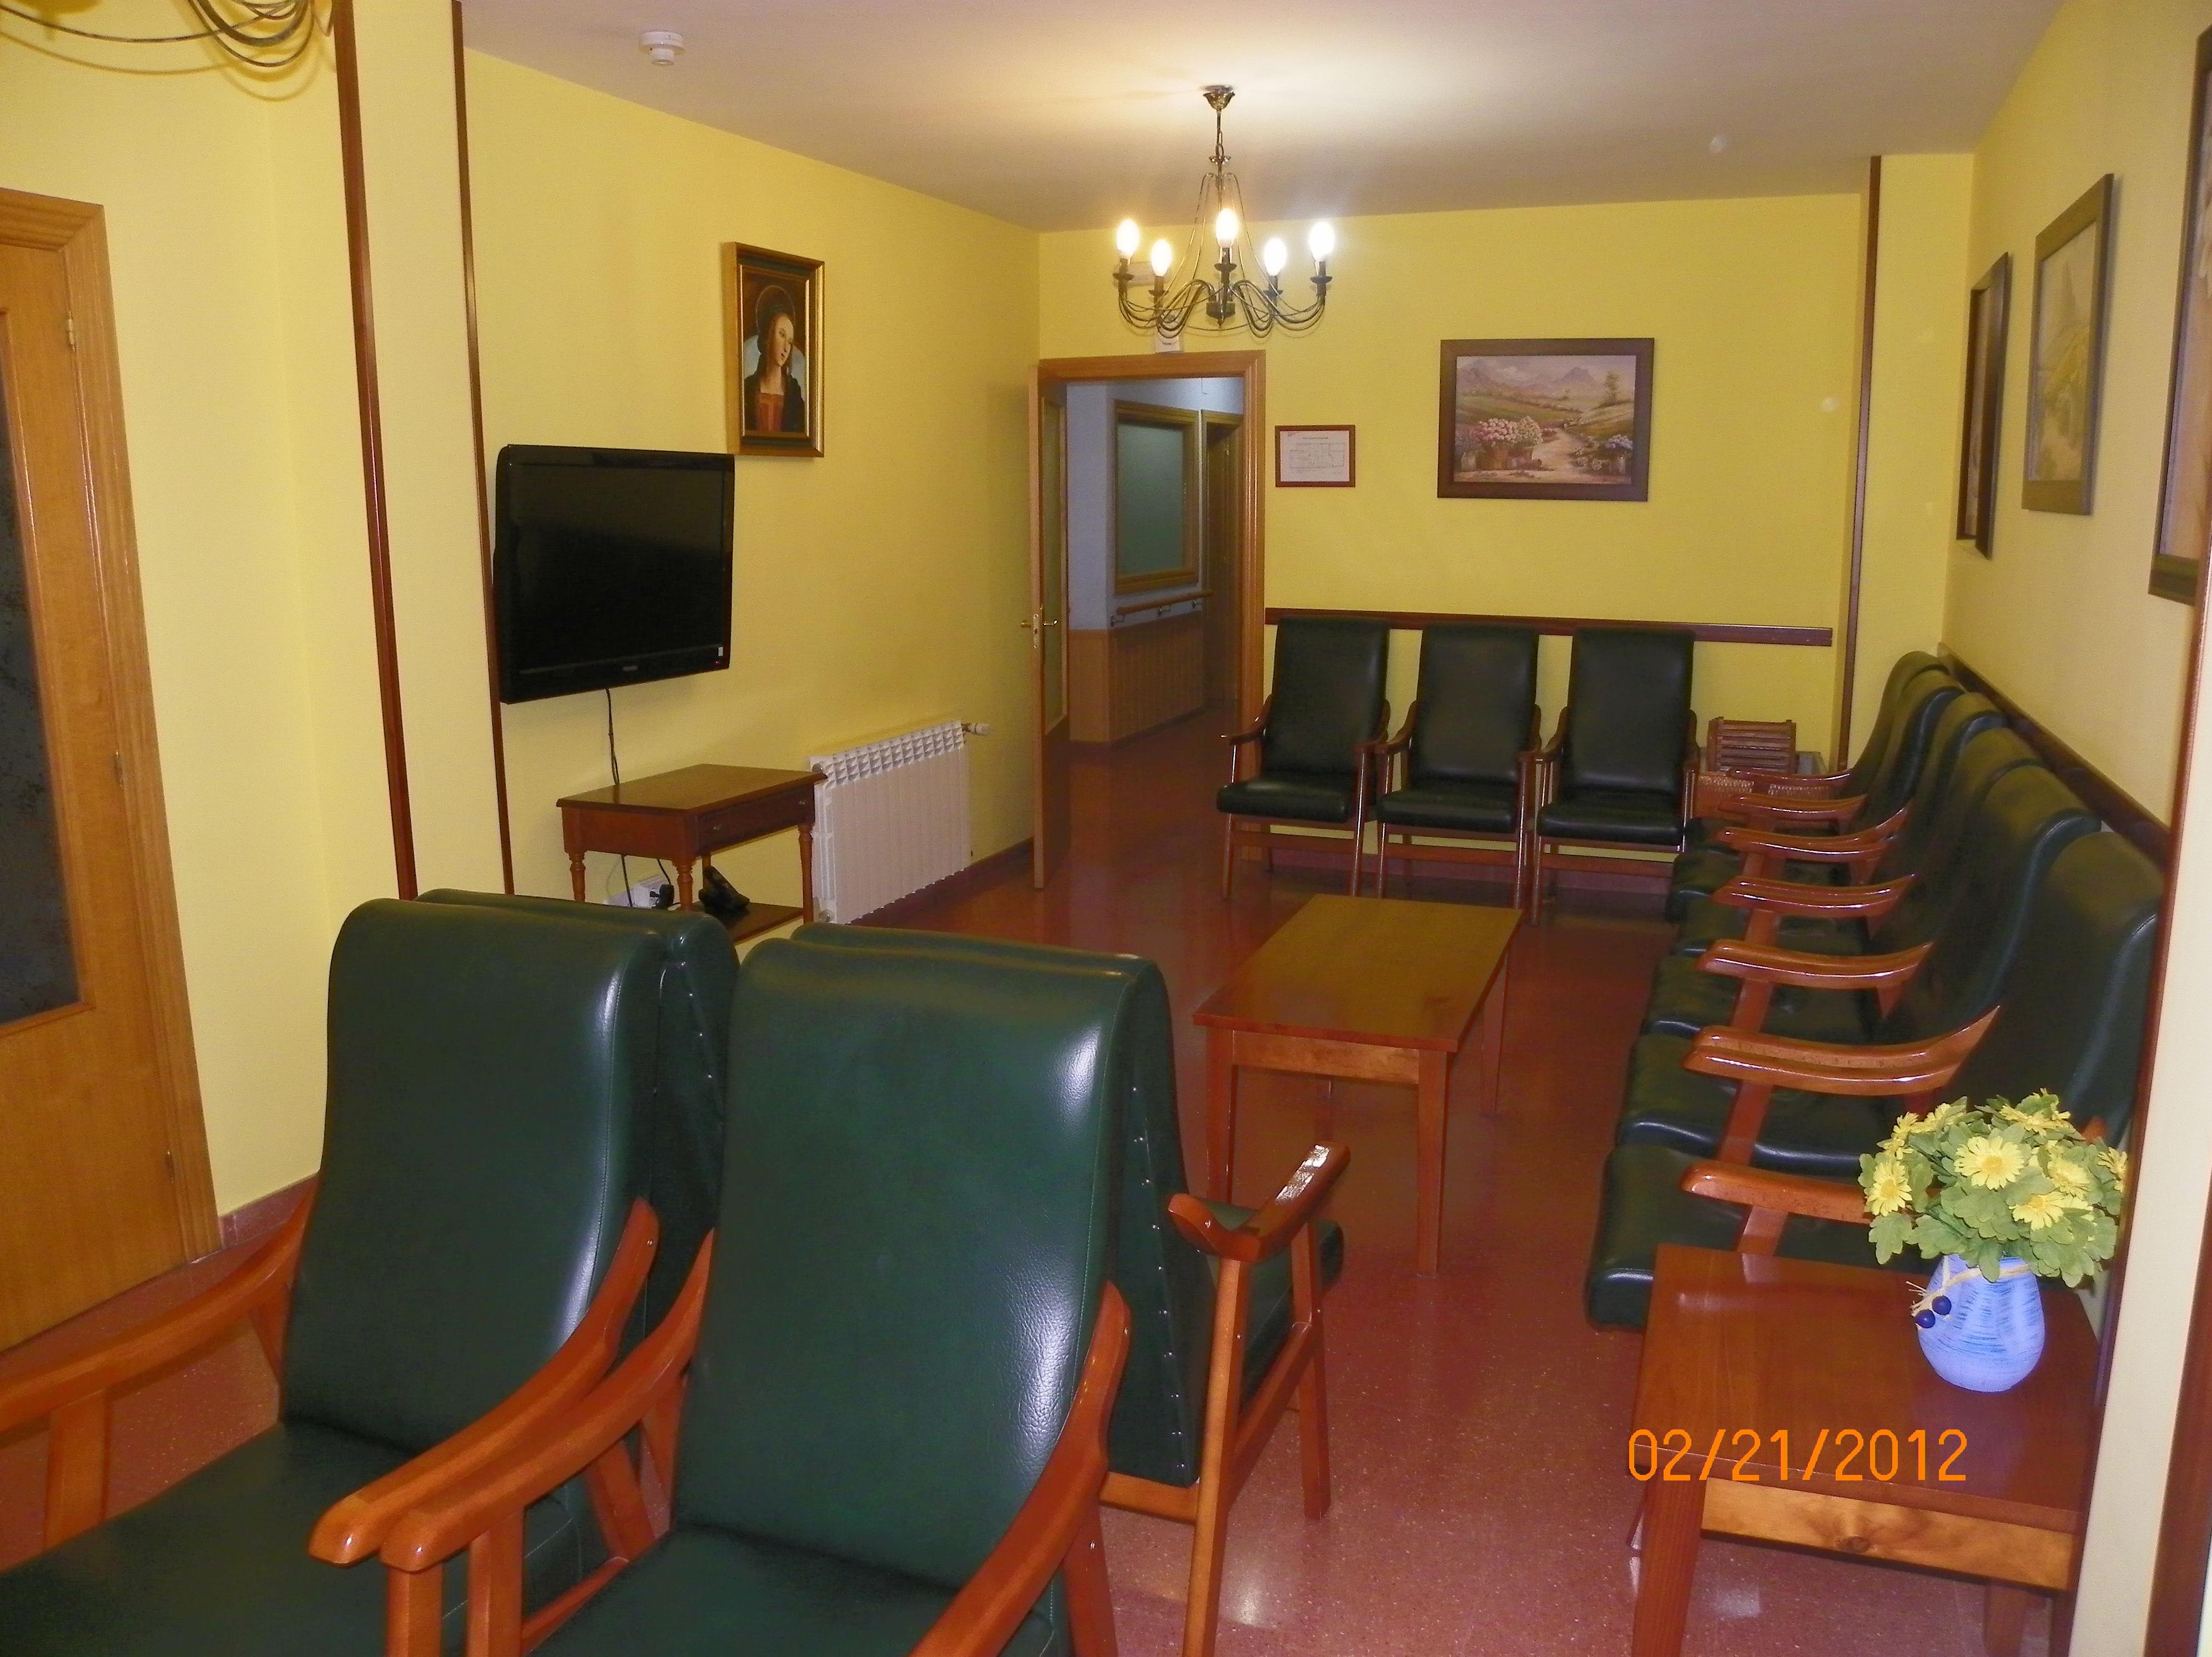 Foto 11 de Residencias geriátricas en Zaratán | Residencia para Personas Mayores Santa Ana